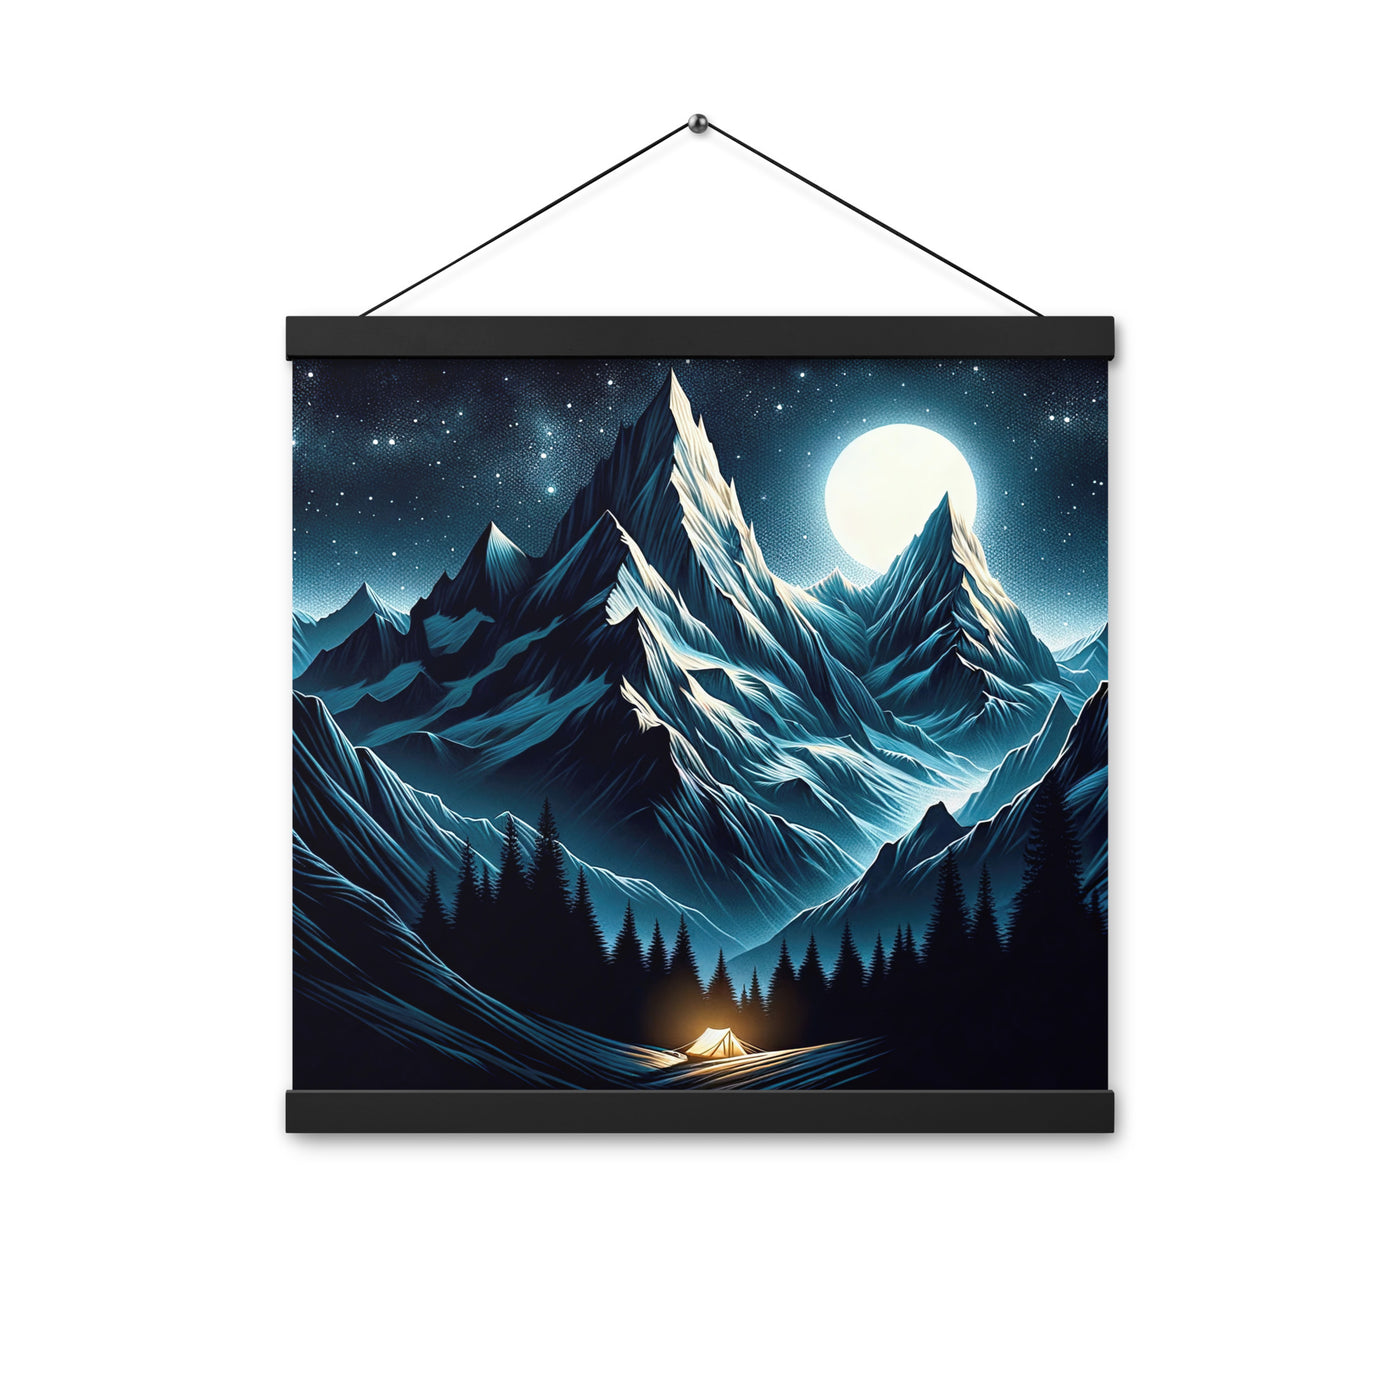 Alpennacht mit Zelt: Mondglanz auf Gipfeln und Tälern, sternenklarer Himmel - Premium Poster mit Aufhängung berge xxx yyy zzz 40.6 x 40.6 cm